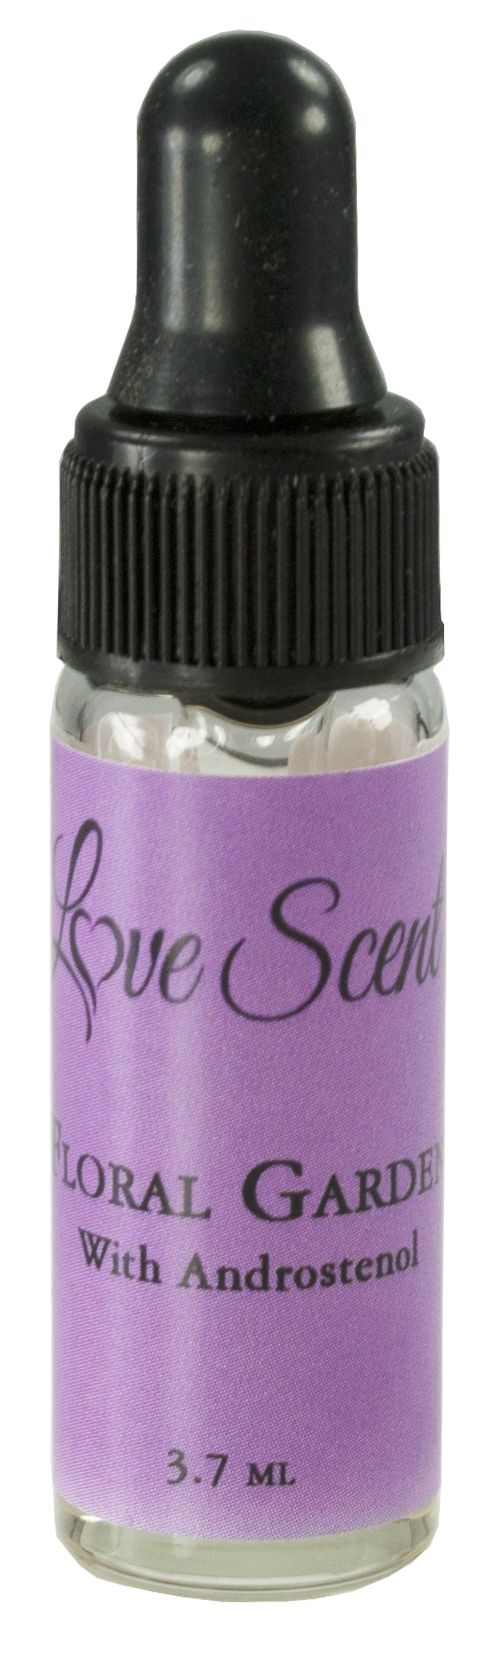 Love Scent Pheromone Oils